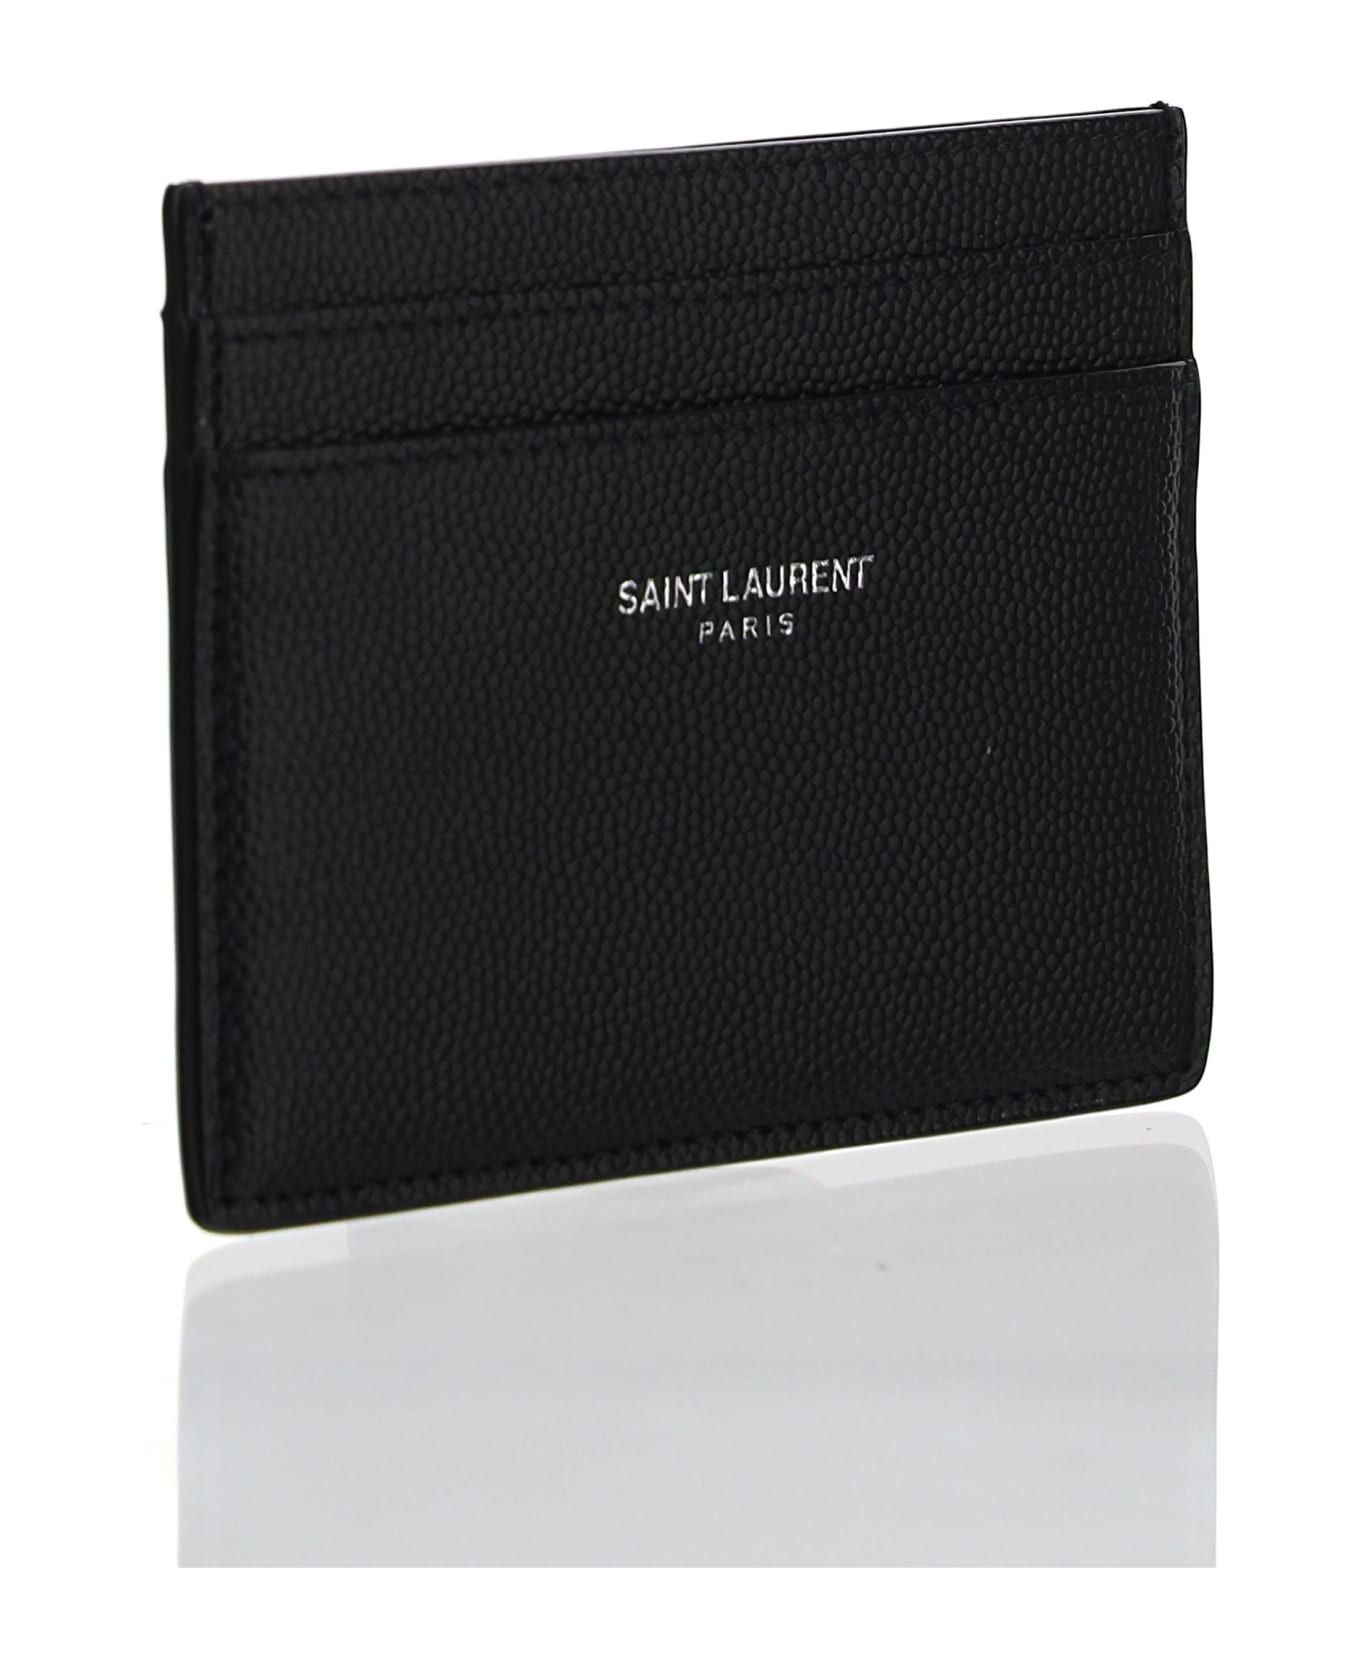 Saint Laurent Credit Card Holder - Black